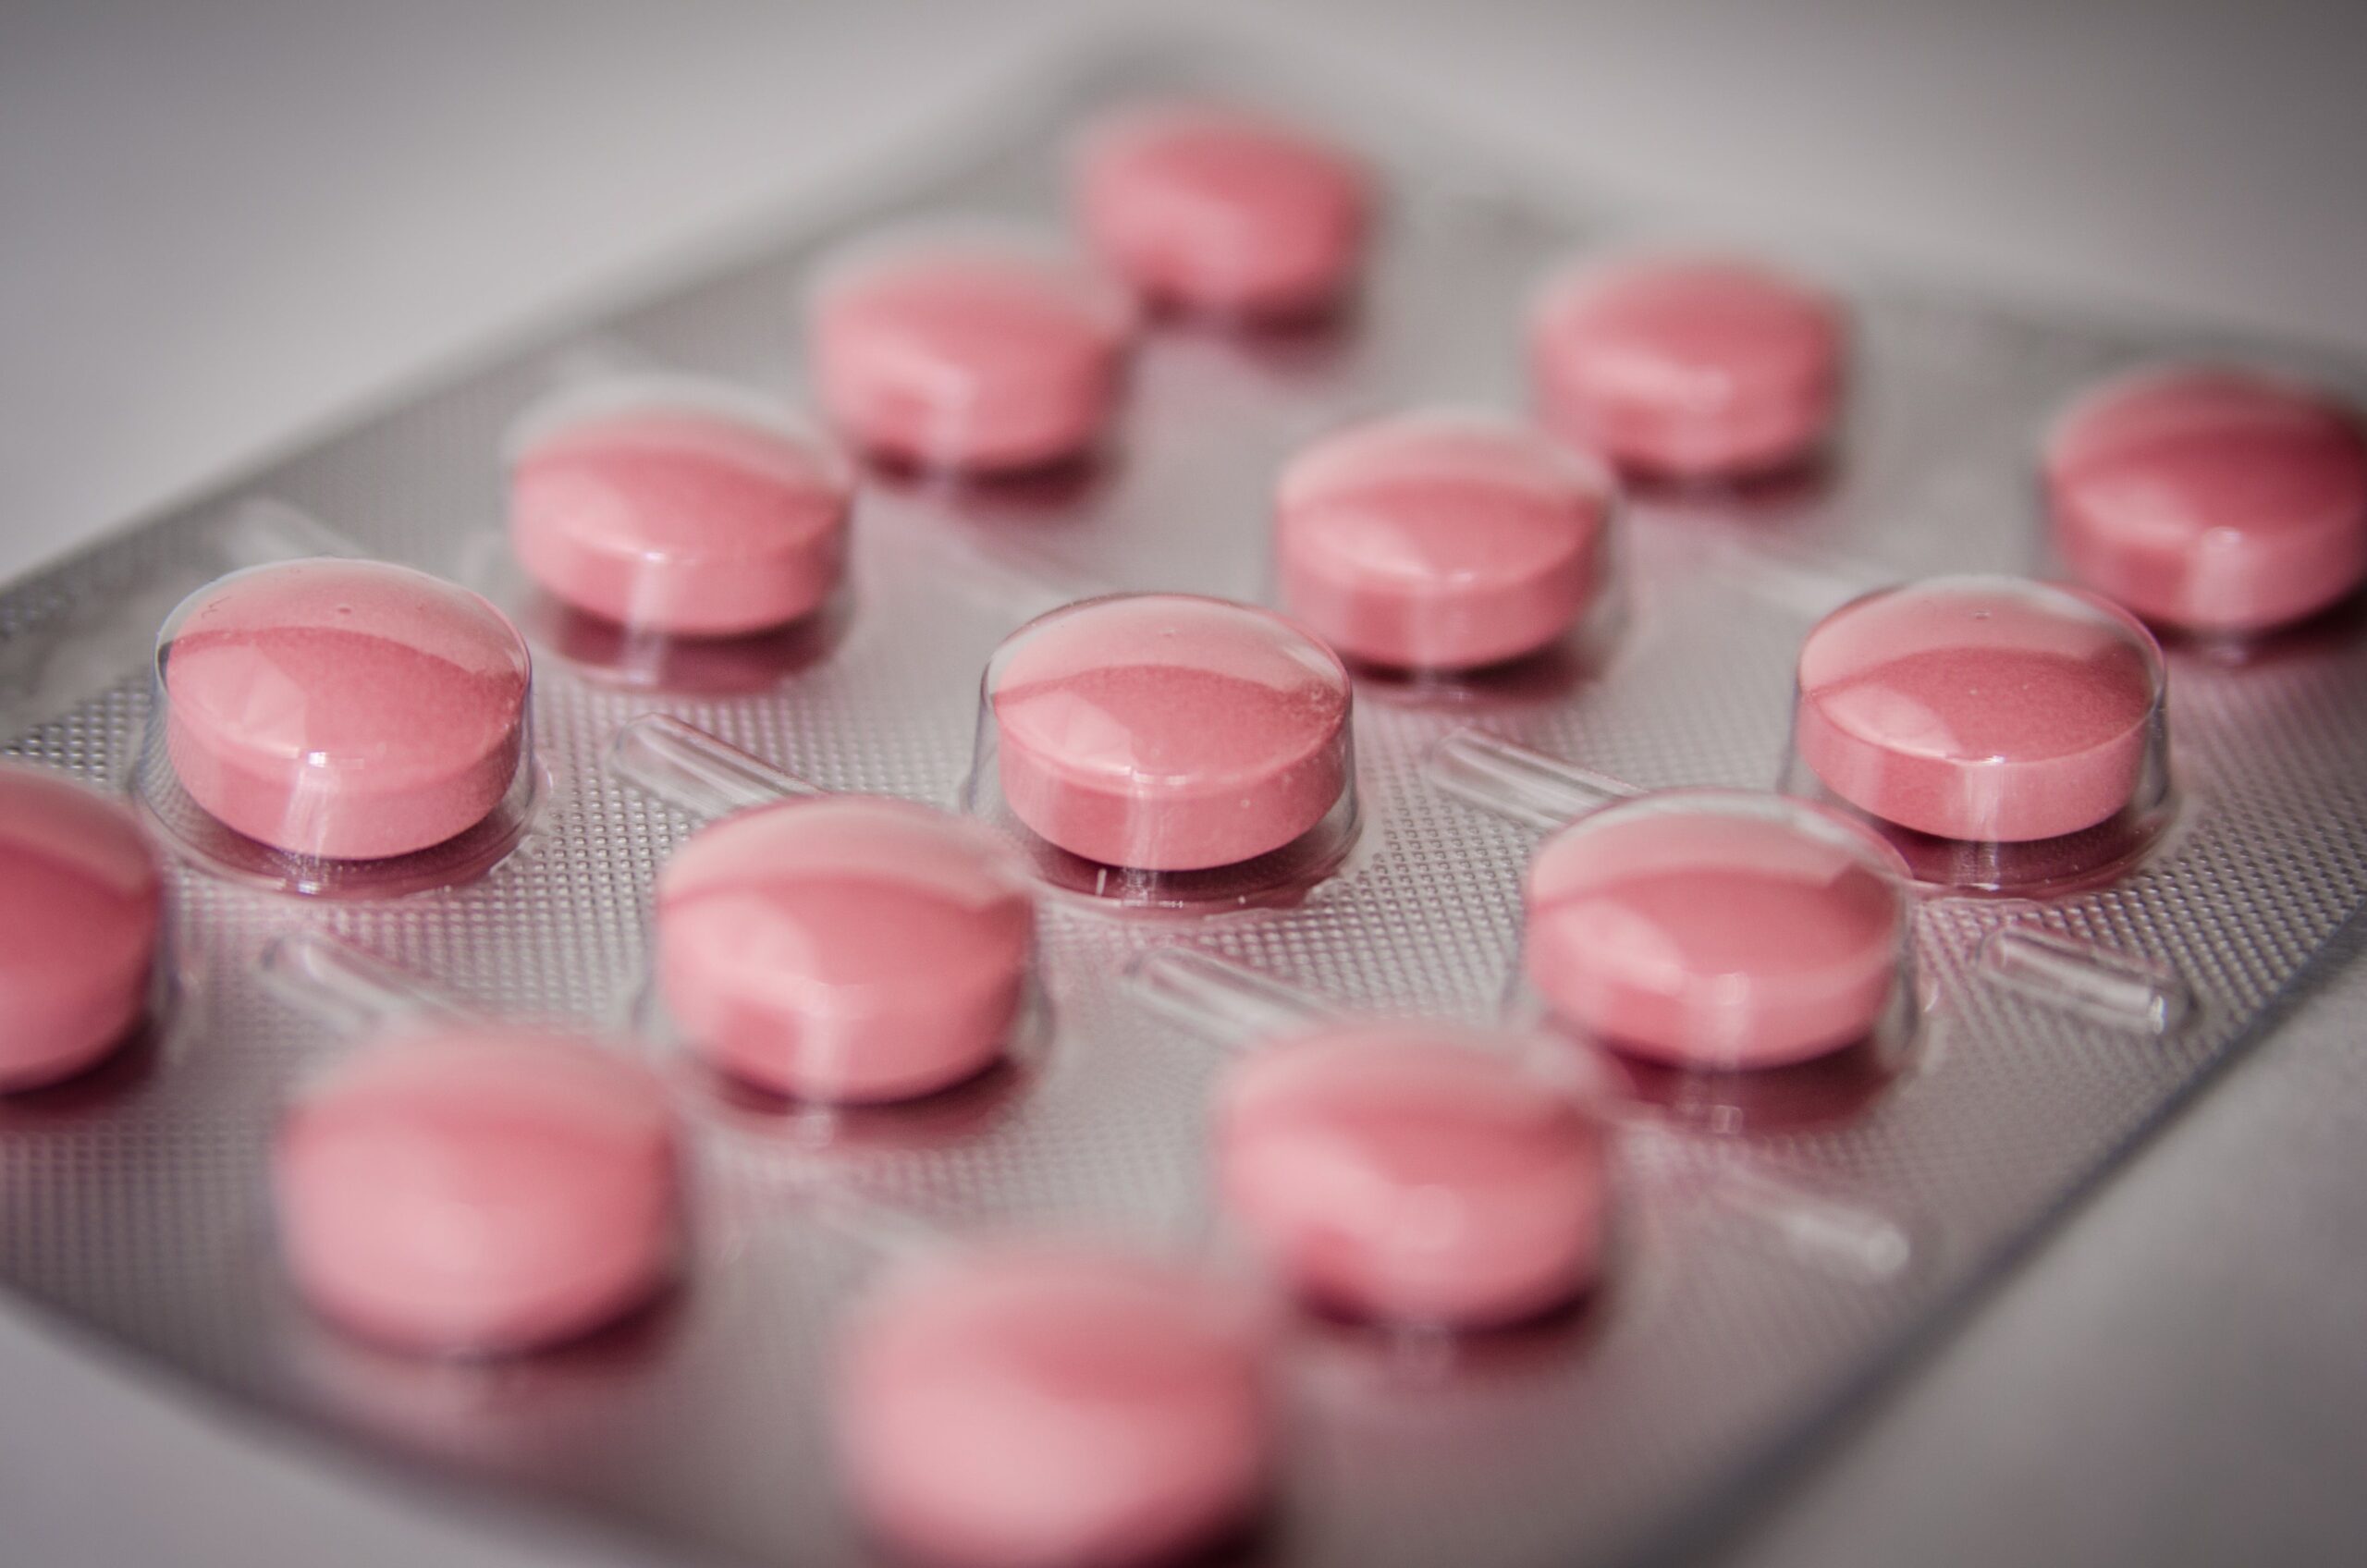 Najbezpieczniejsza antykoncepcja hormonalna: Przegląd opcji